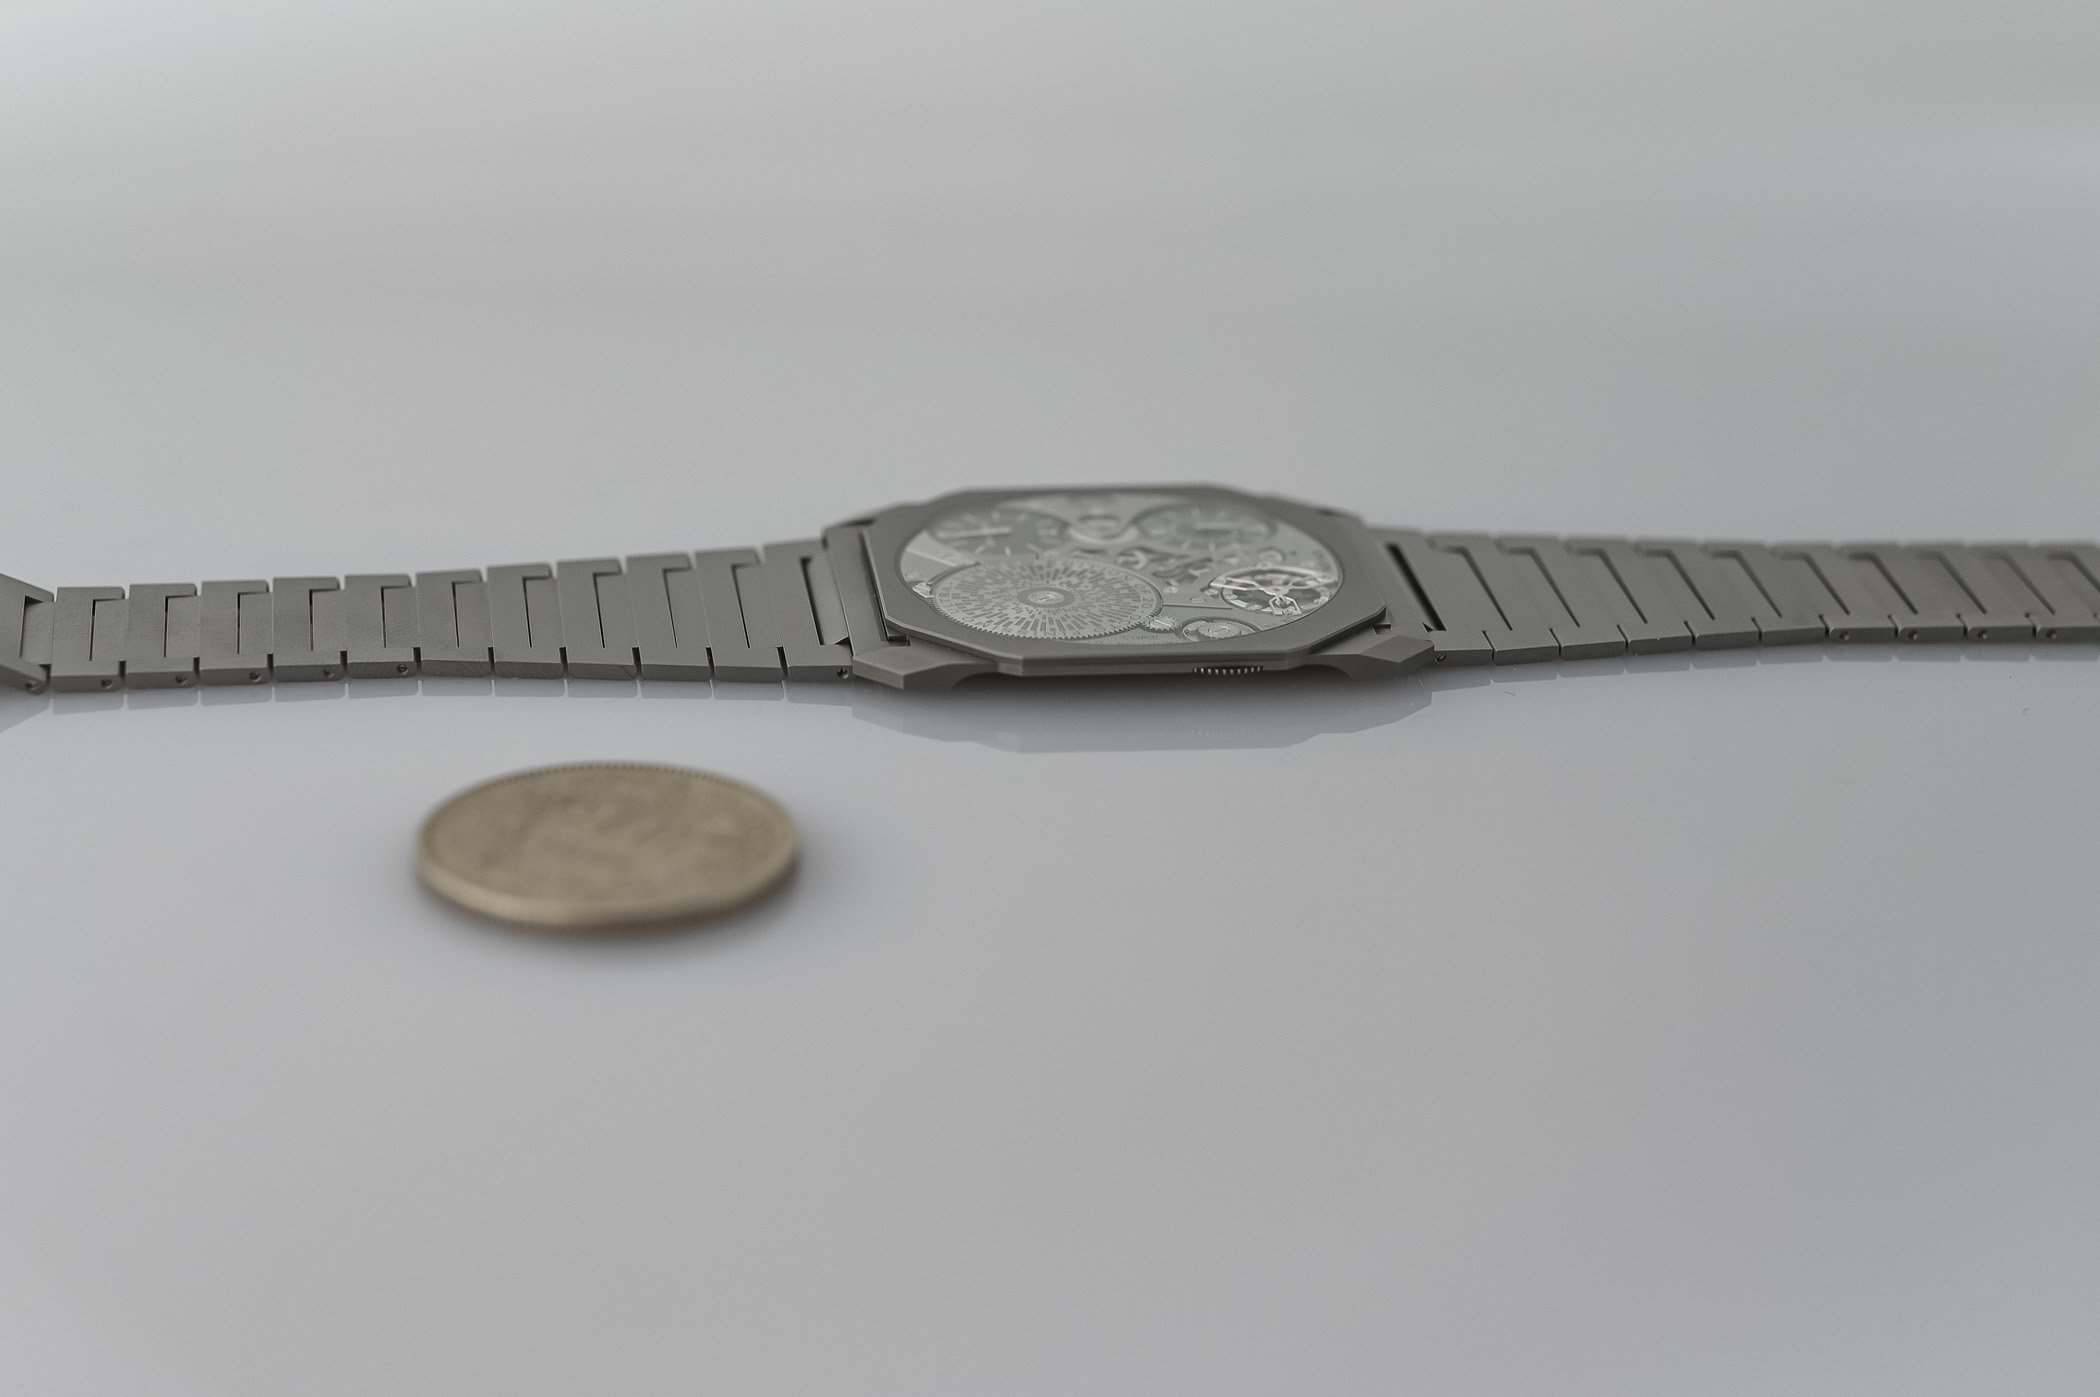 Новые самые тонкие в мире механические часы Bulgari Octo Finissimo Ultra COSC толщиной 1,70 мм